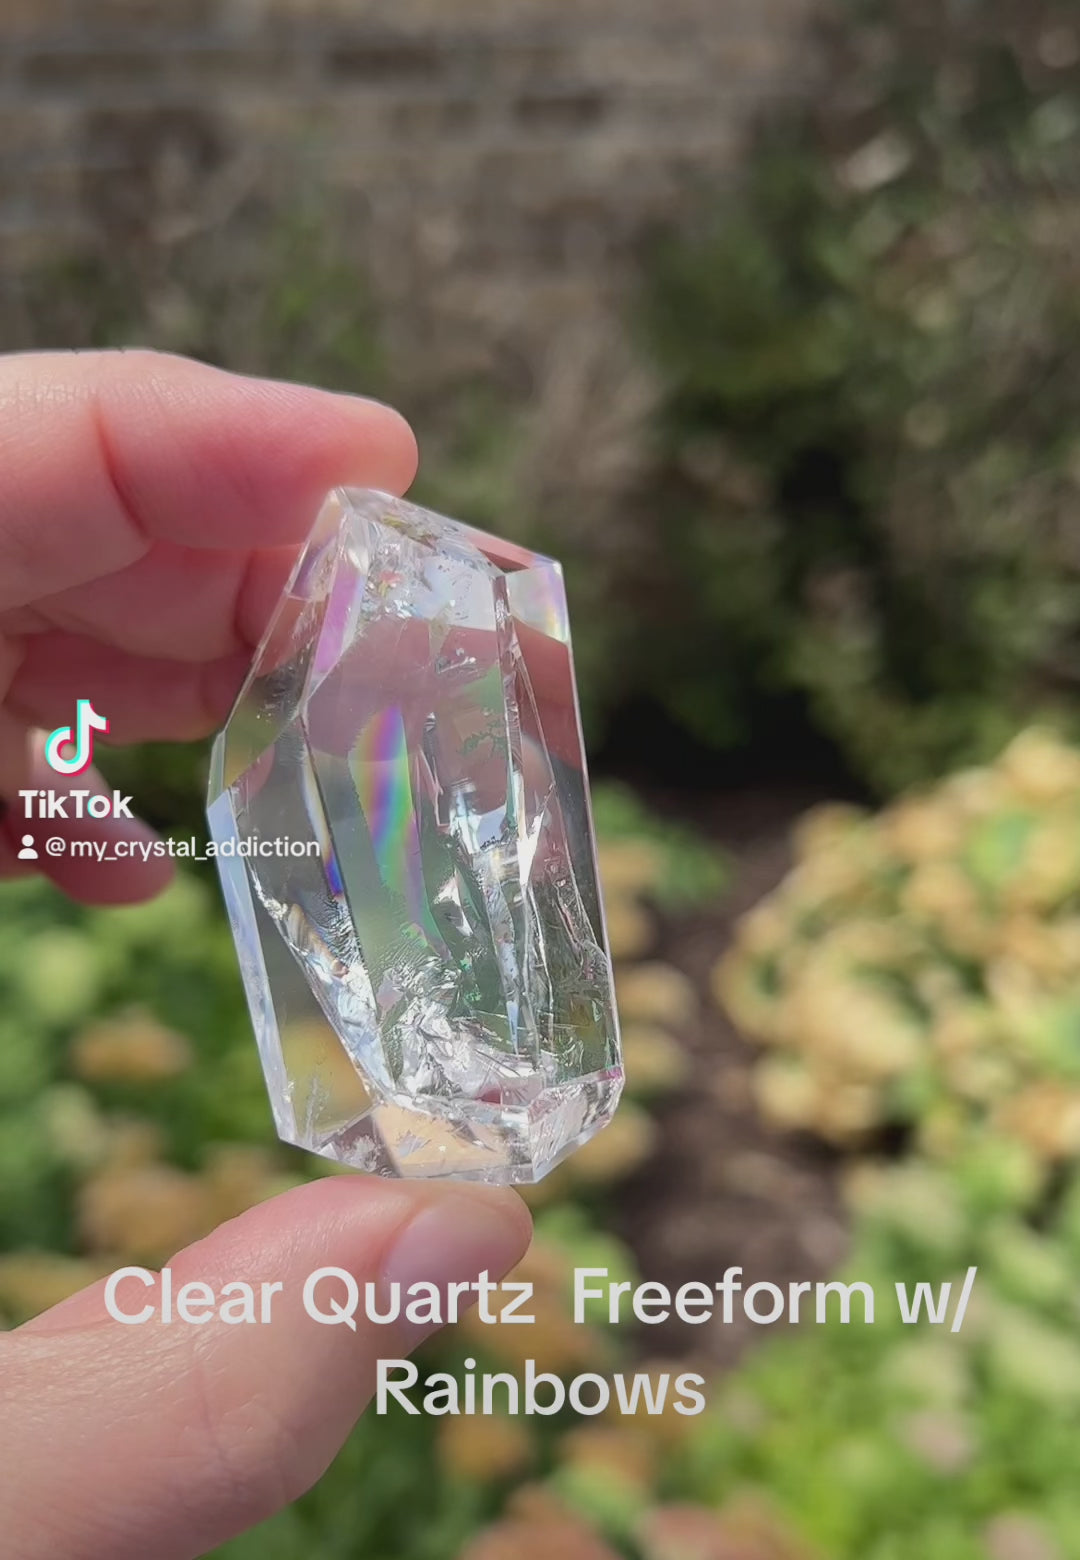 Clear Quartz Freeform w/Rainbows